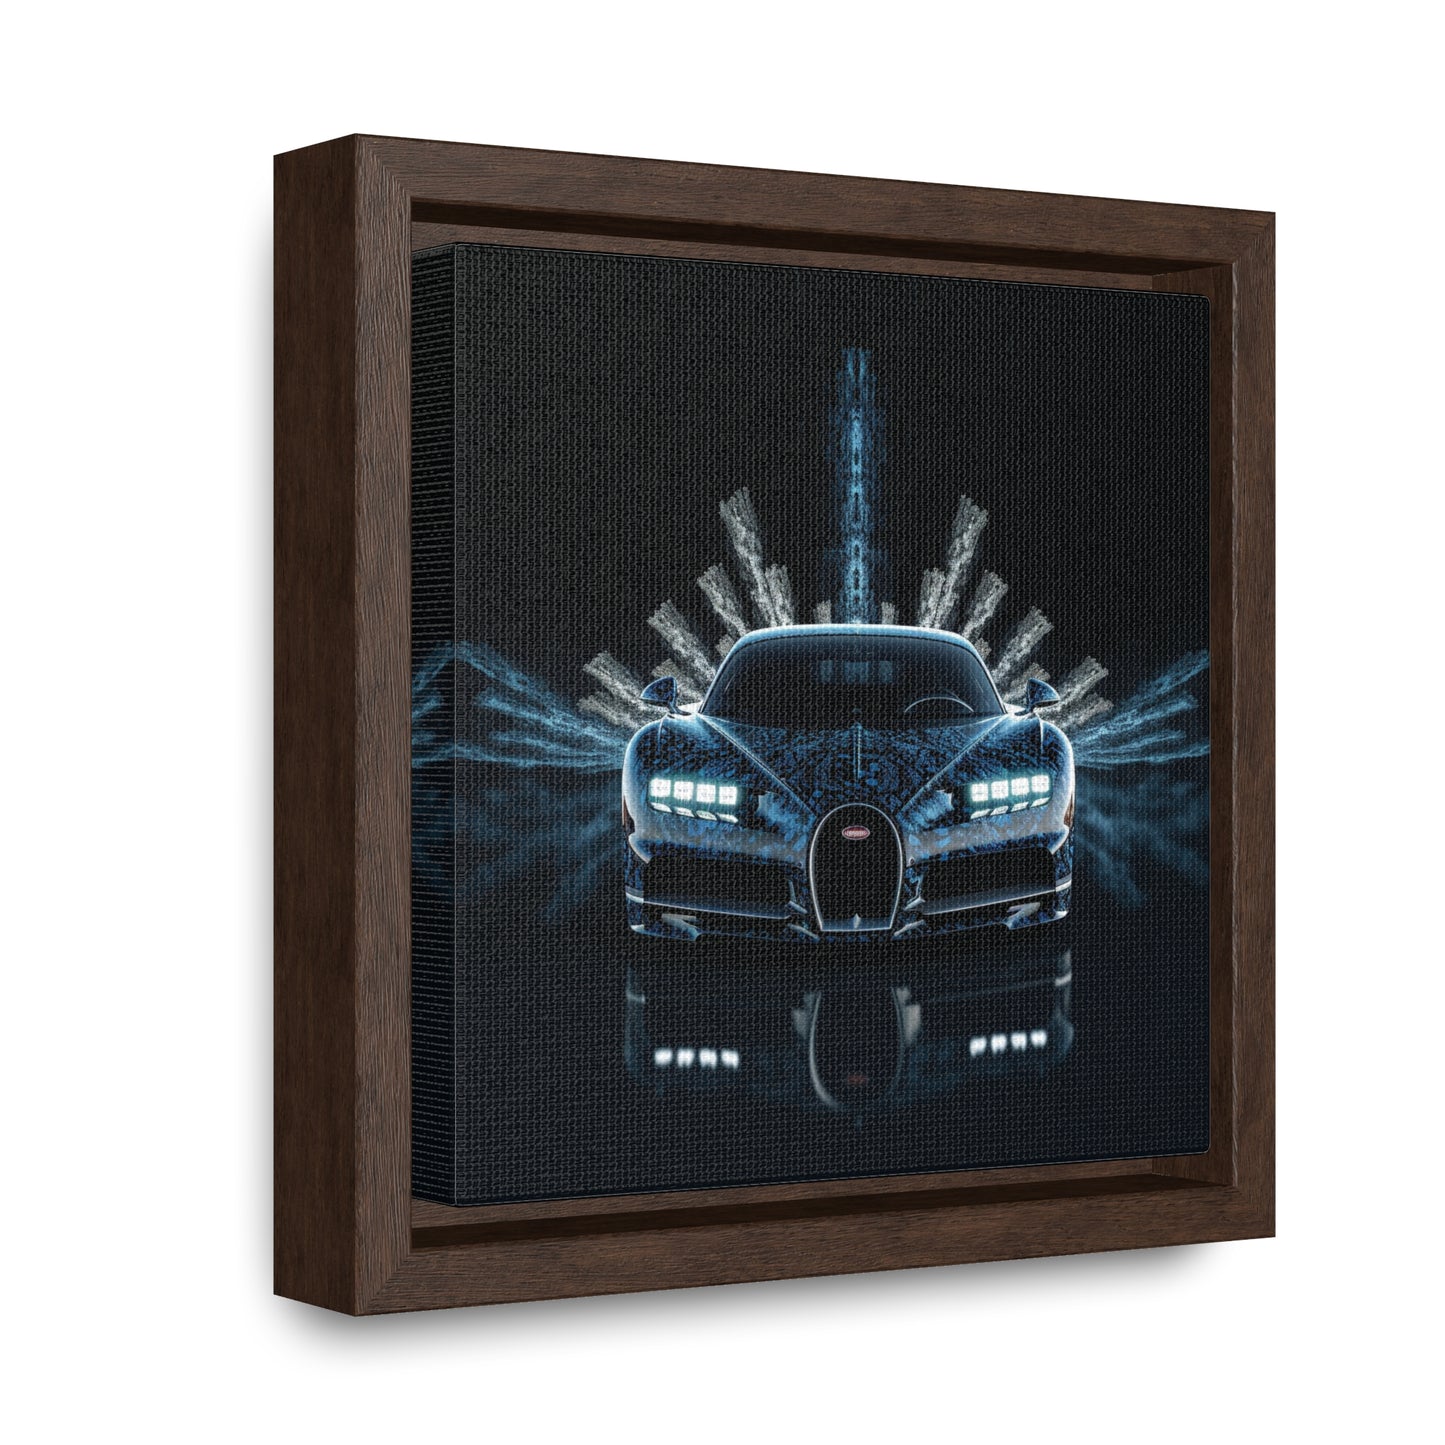 Gallery Canvas Wraps, Square Frame Hyper Bugatti 2